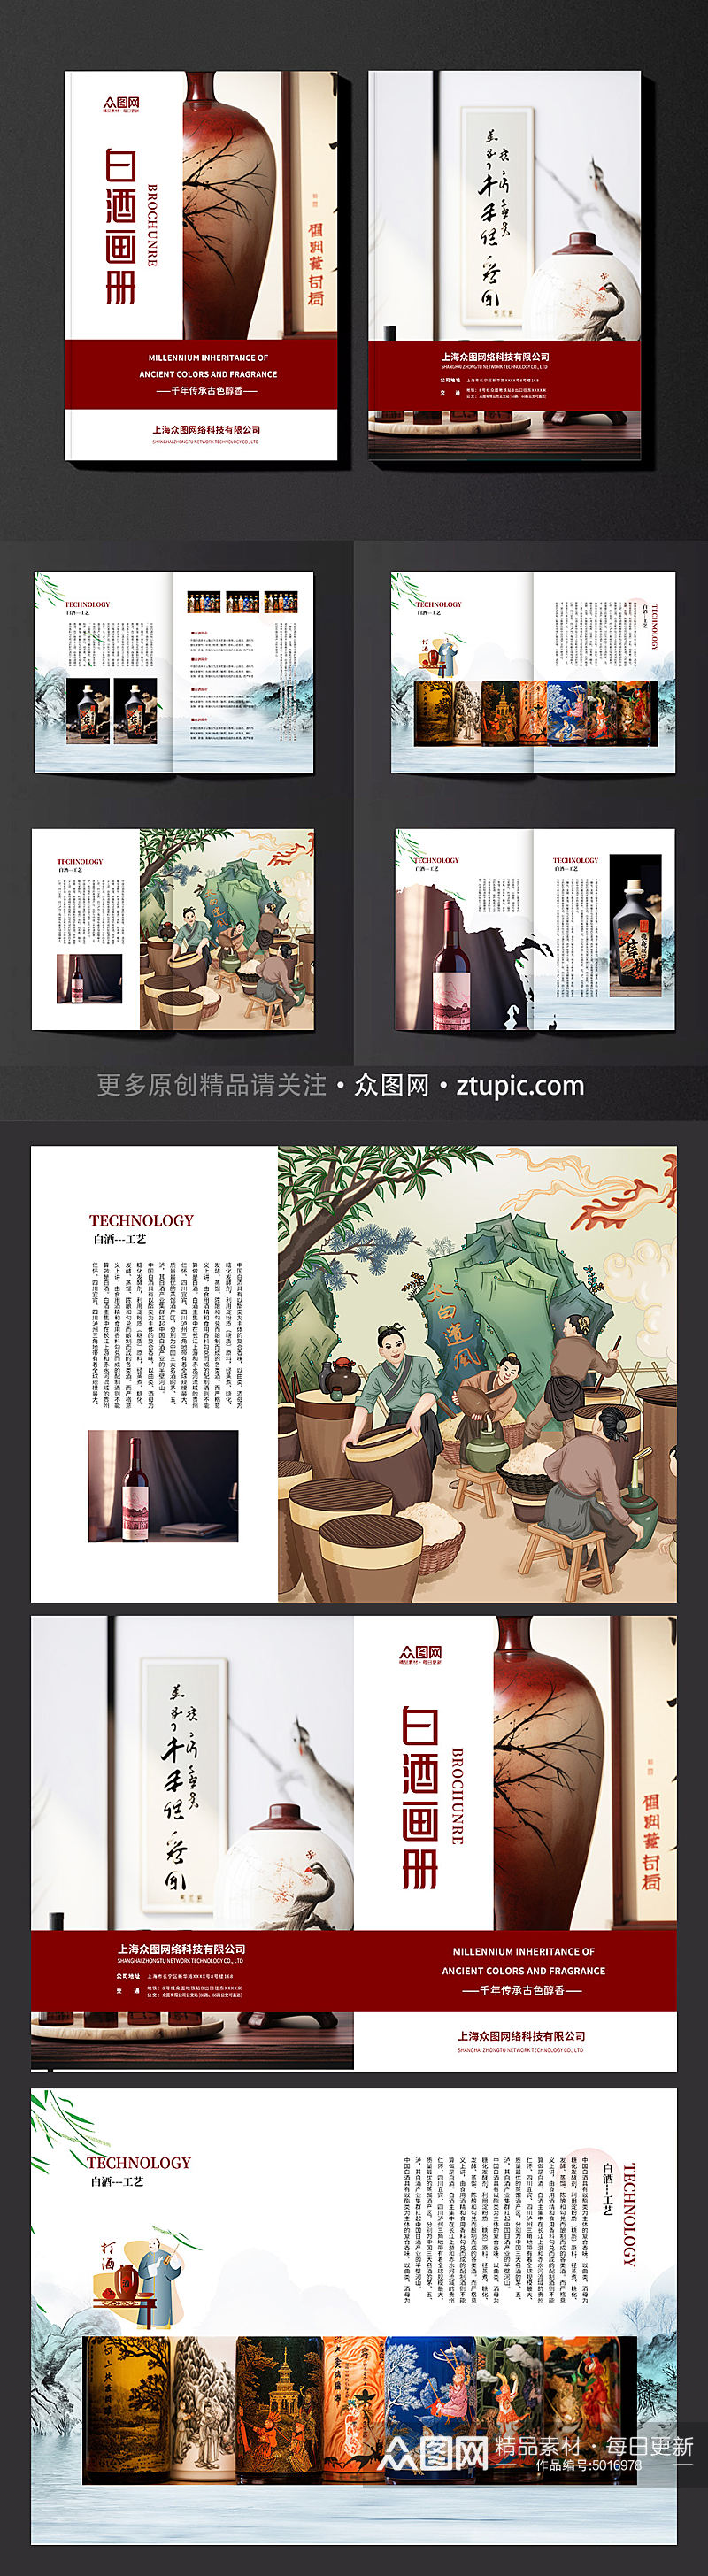 古风简约酒文化白酒宣传画册素材